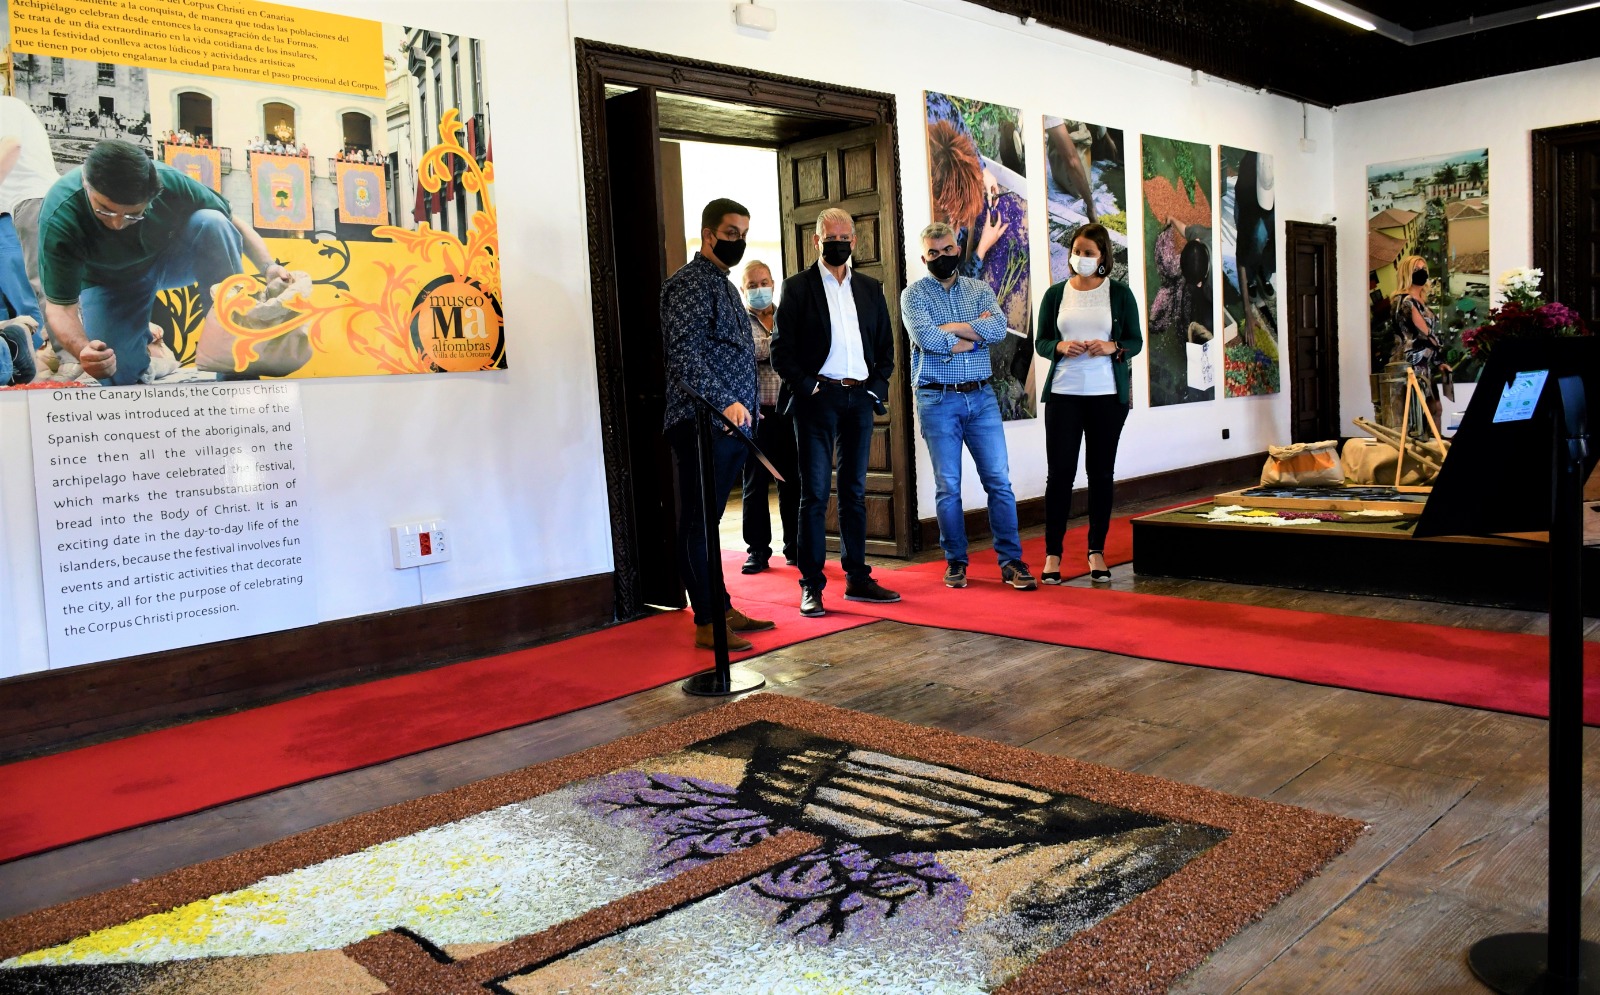 La instalación, tras un año de mejoras y modernizaciones, retorna a la actividad este miércoles 28 de abril y se convierte en el primer centro de interpretación mundial del arte efímero de las alfombras